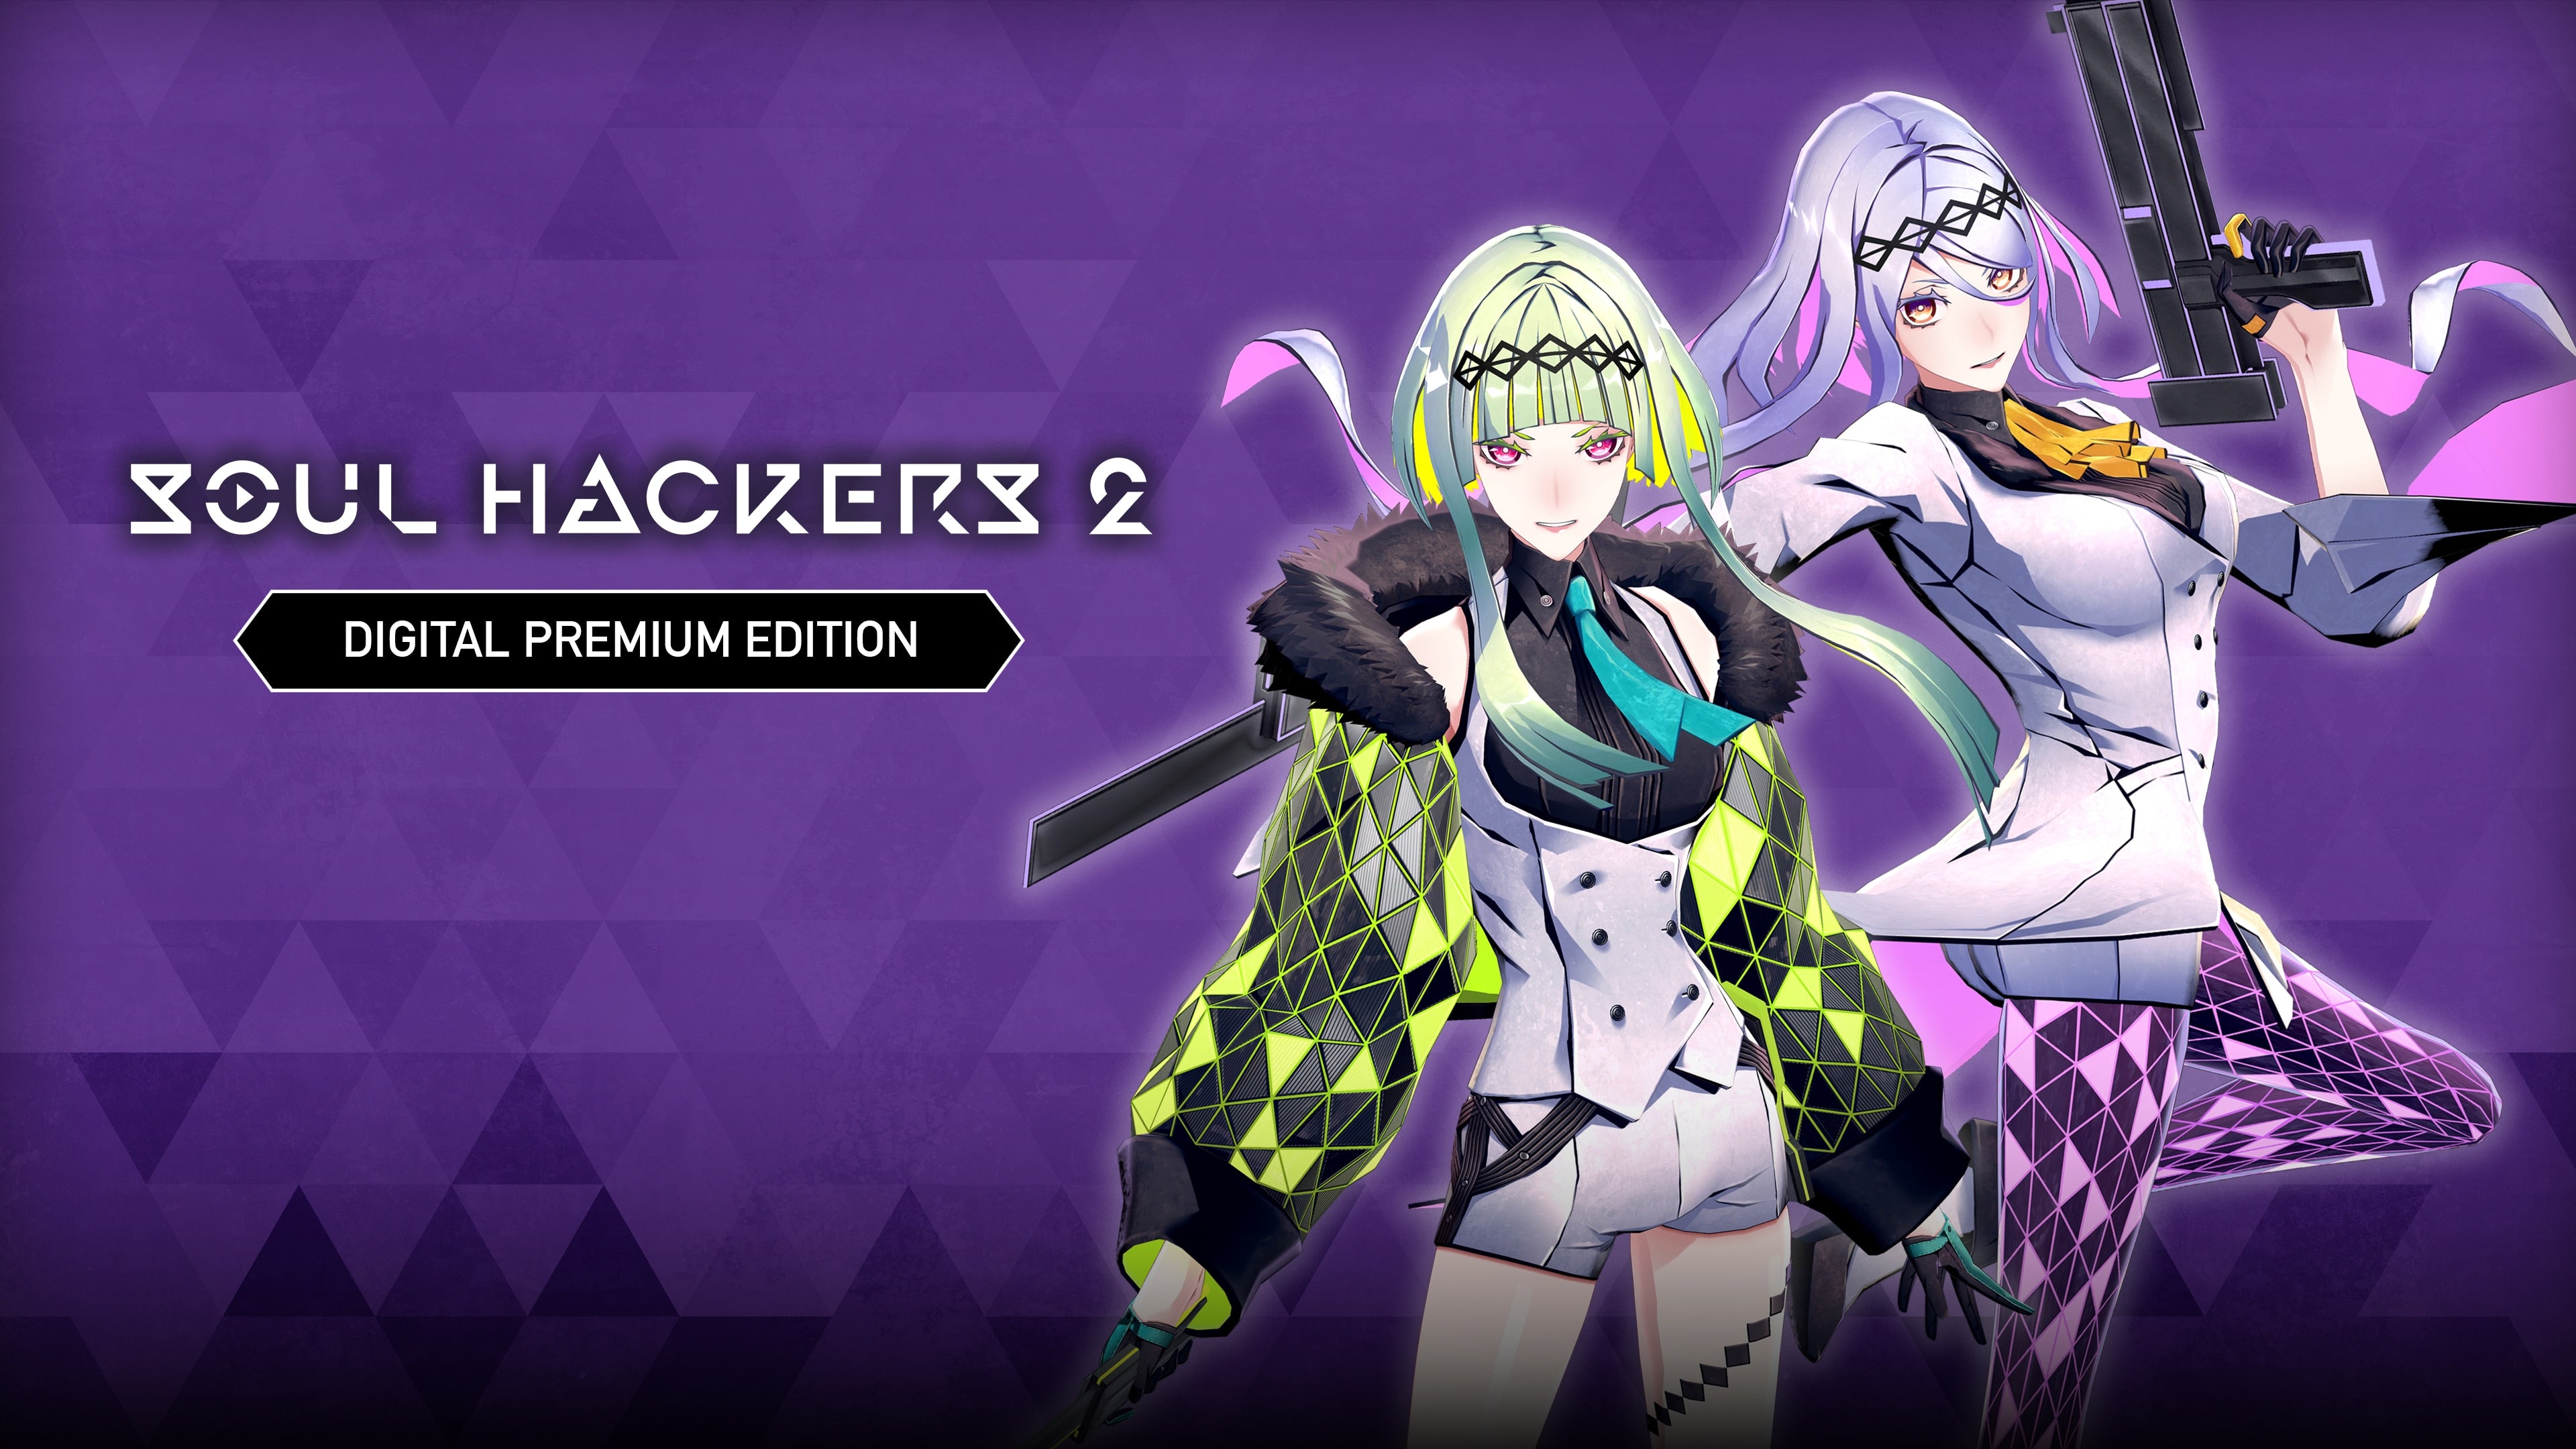 Soul Hackers 2 - Edición Digital Deluxe Cuenta Principal Xbox One Xbox Series